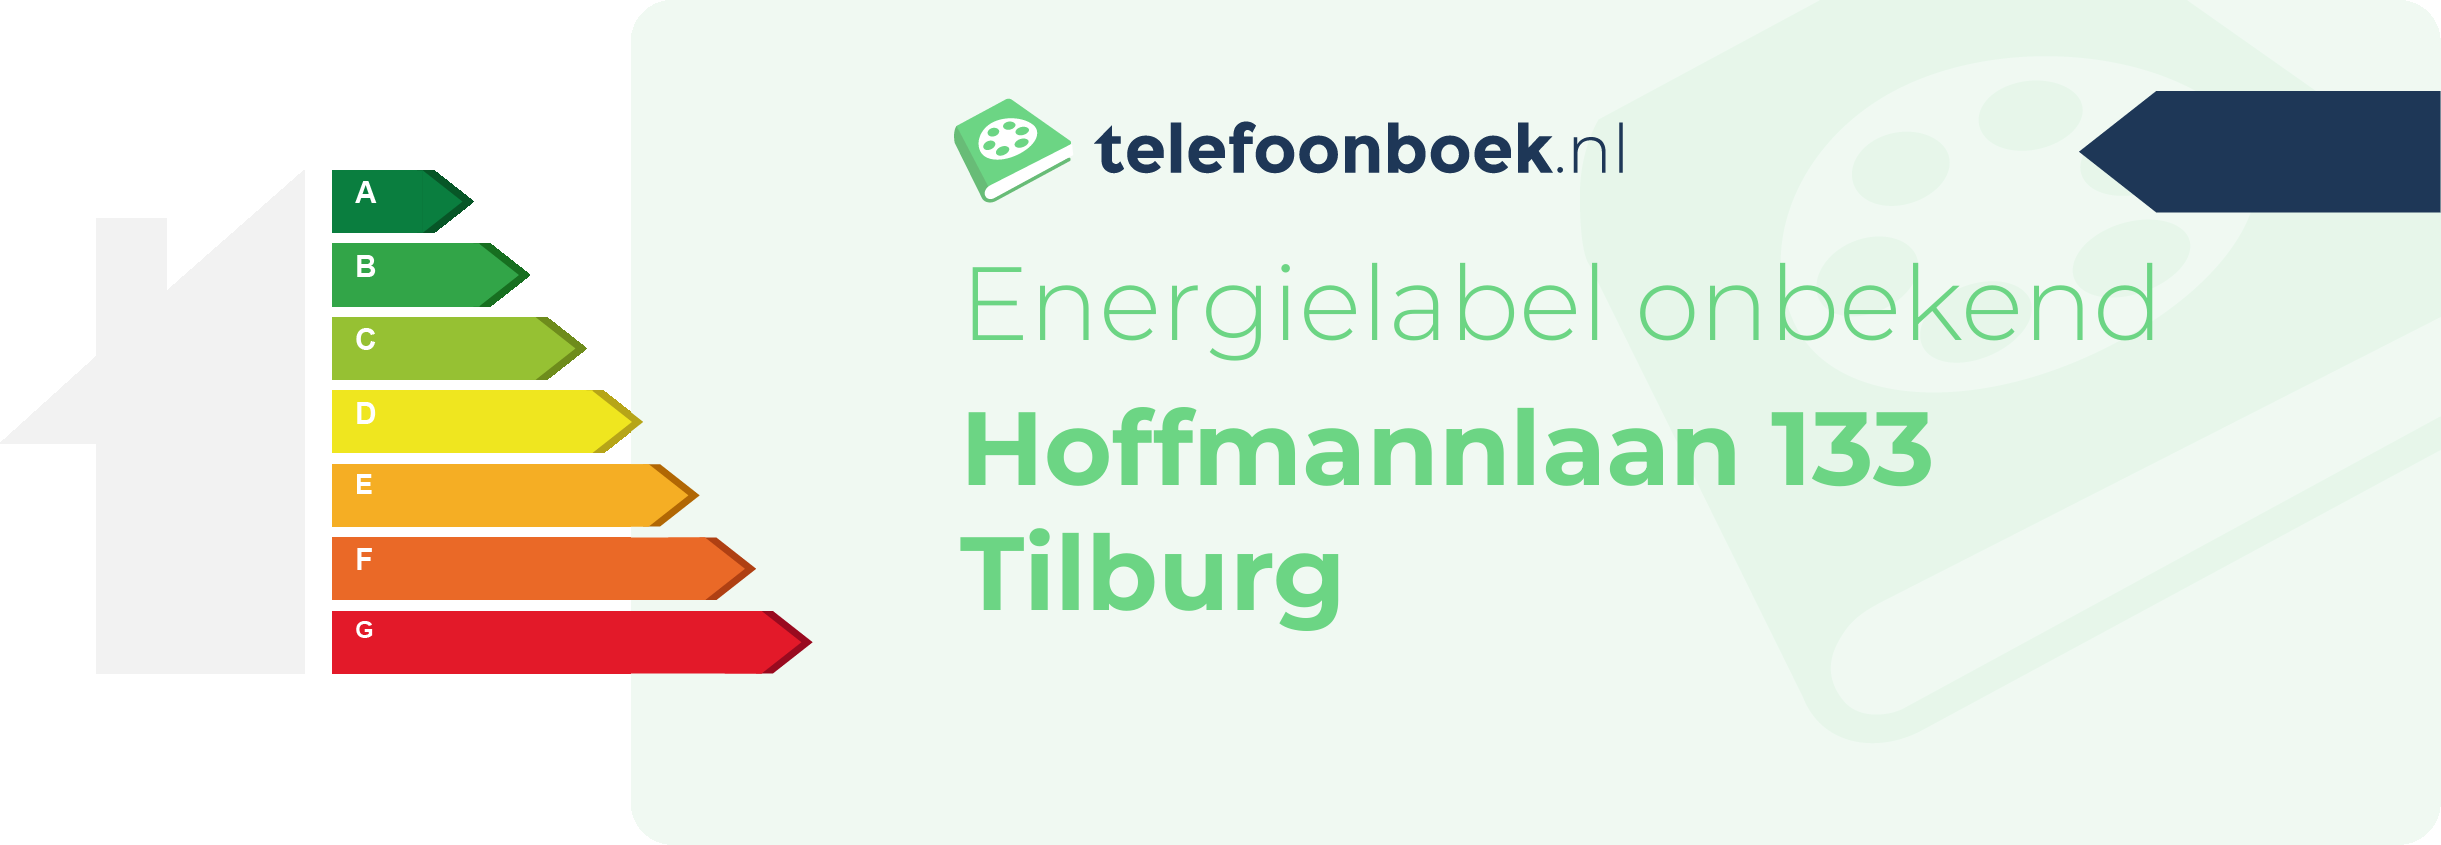 Energielabel Hoffmannlaan 133 Tilburg